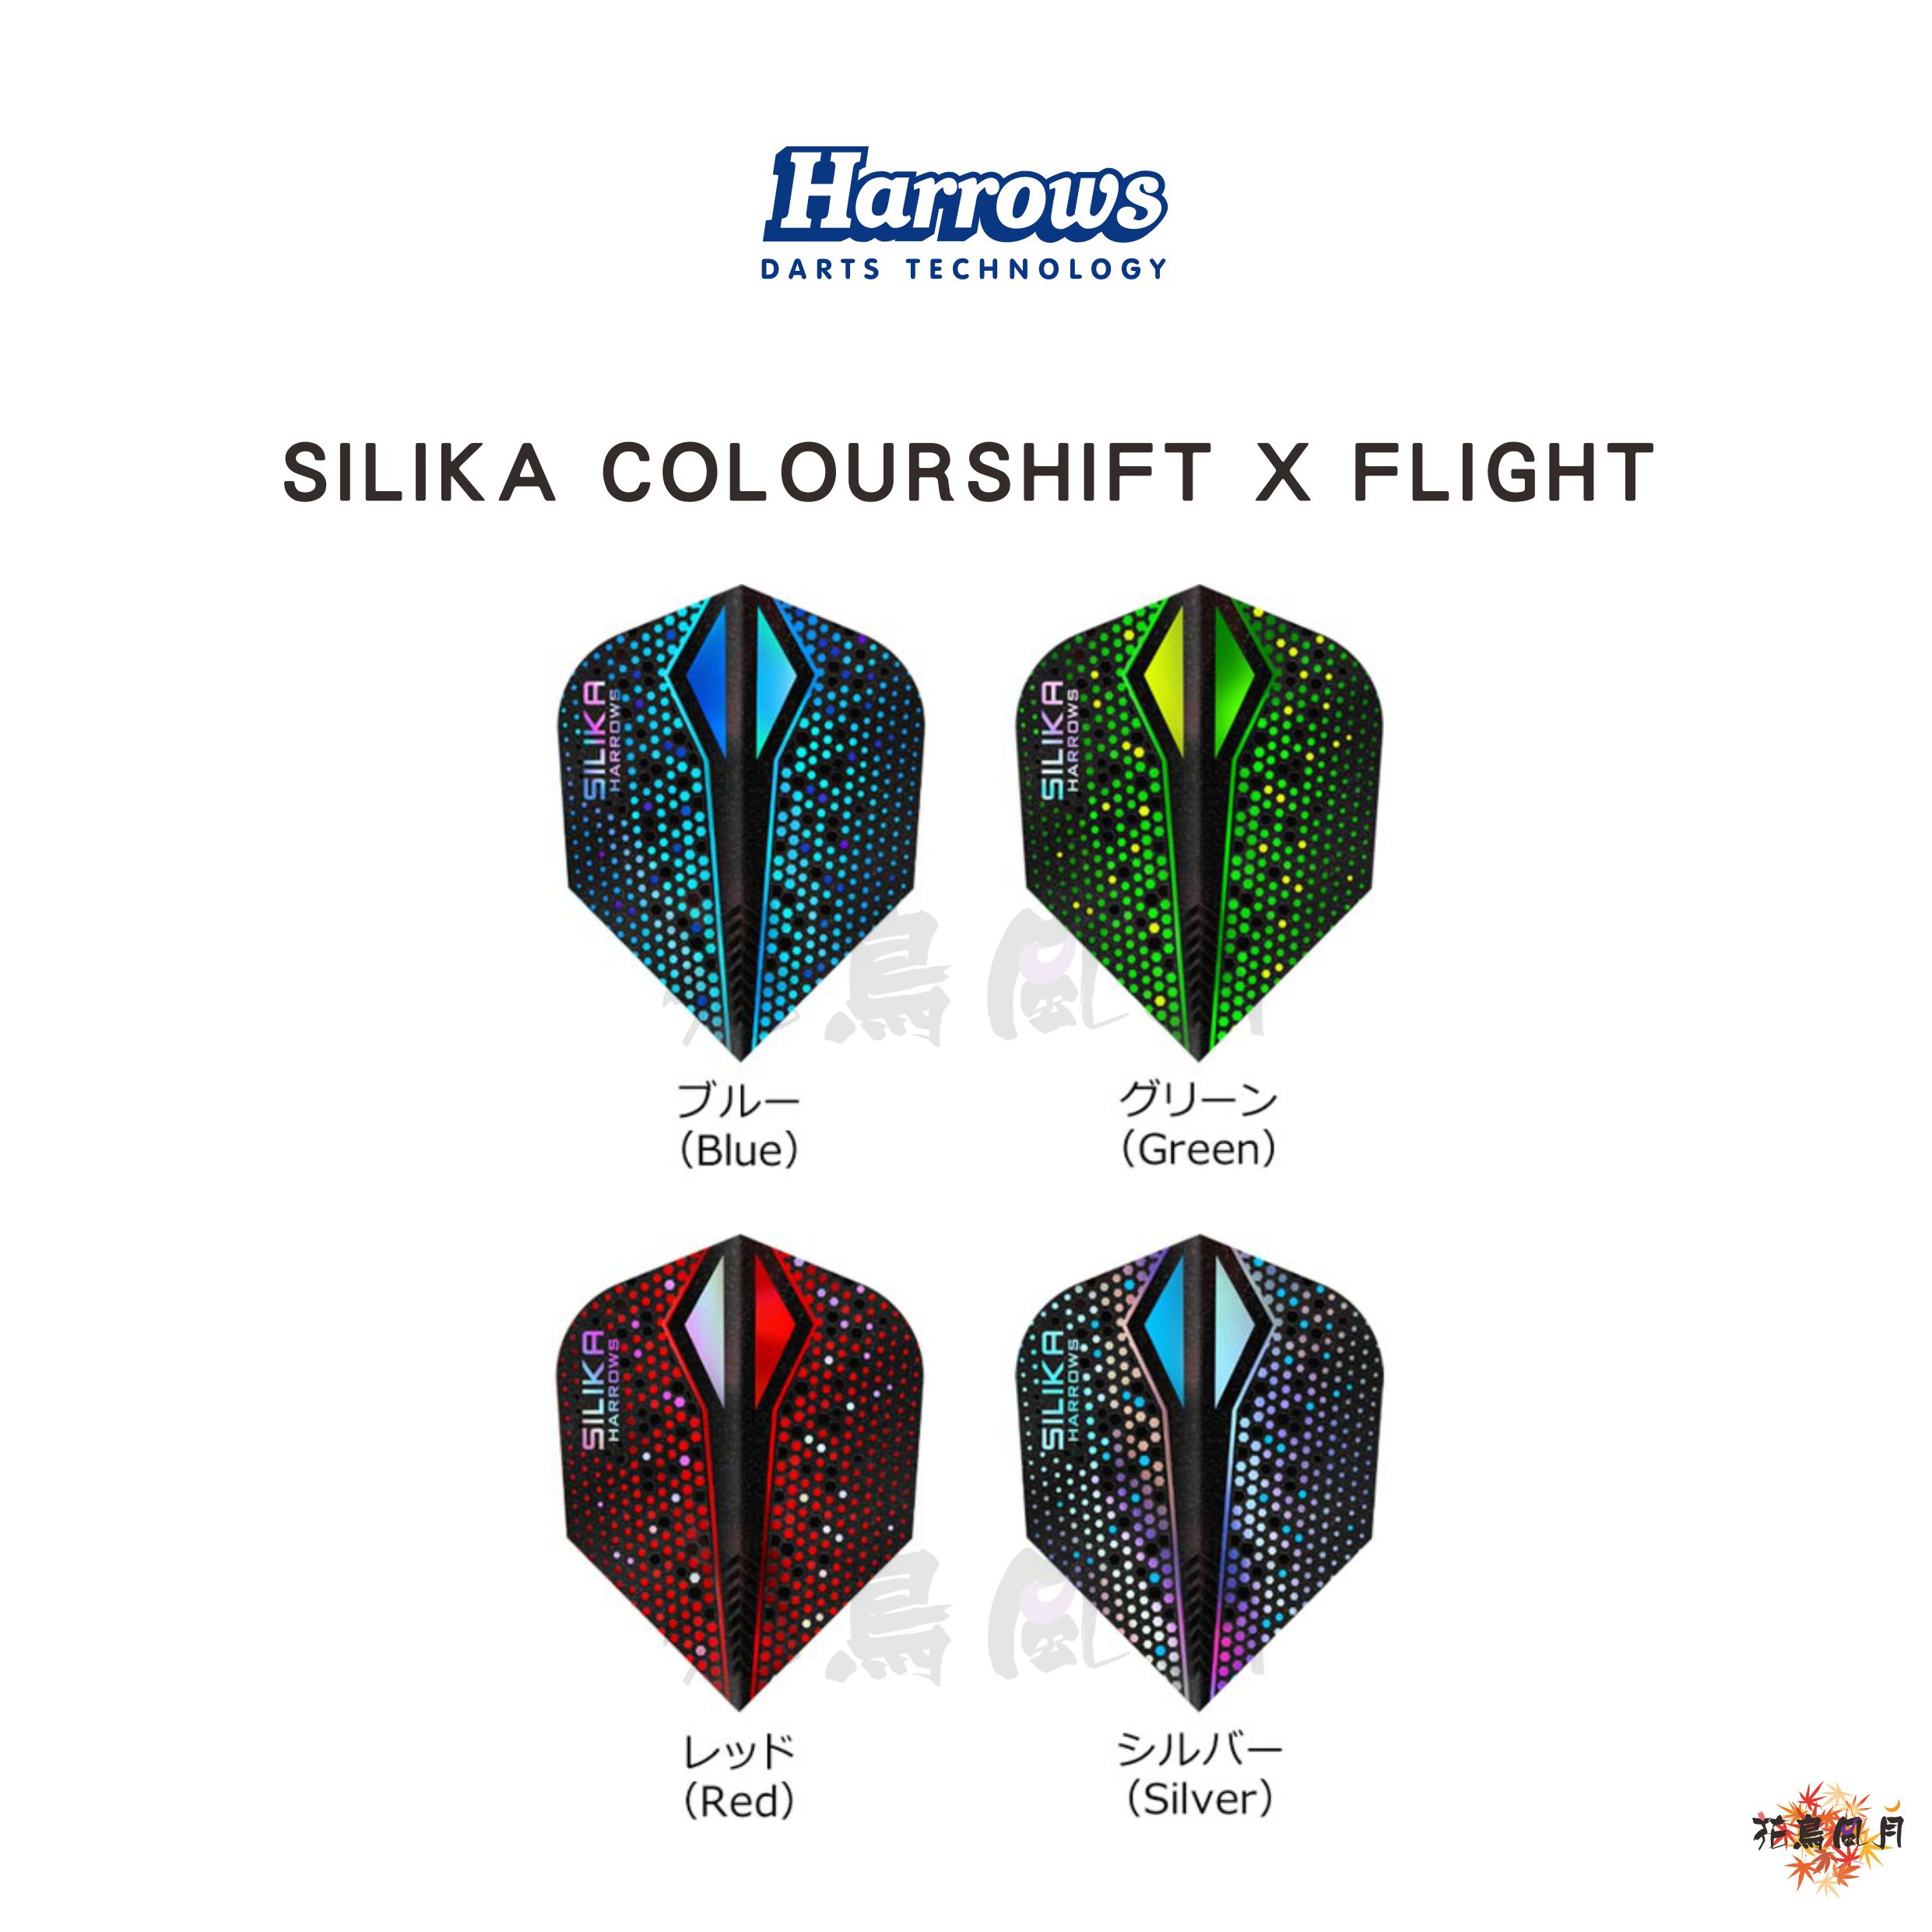 Harrowsハローズ-SILIKA-COLOURSHIFT-X-FLIGHT.jpg